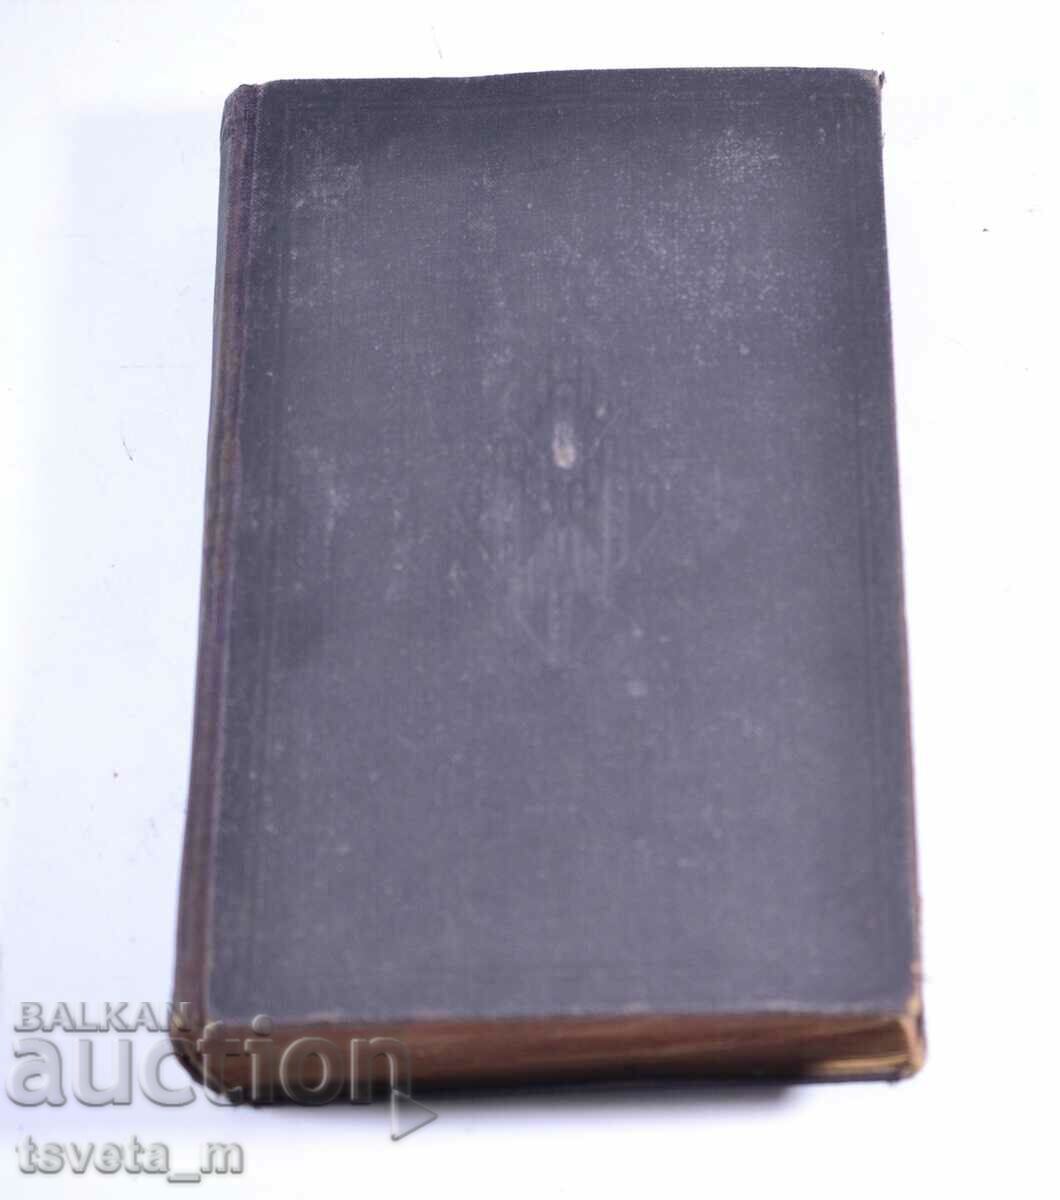 Βίβλος 1924 Δικαστικό Τυπογραφείο Αναθεωρημένη έκδοση